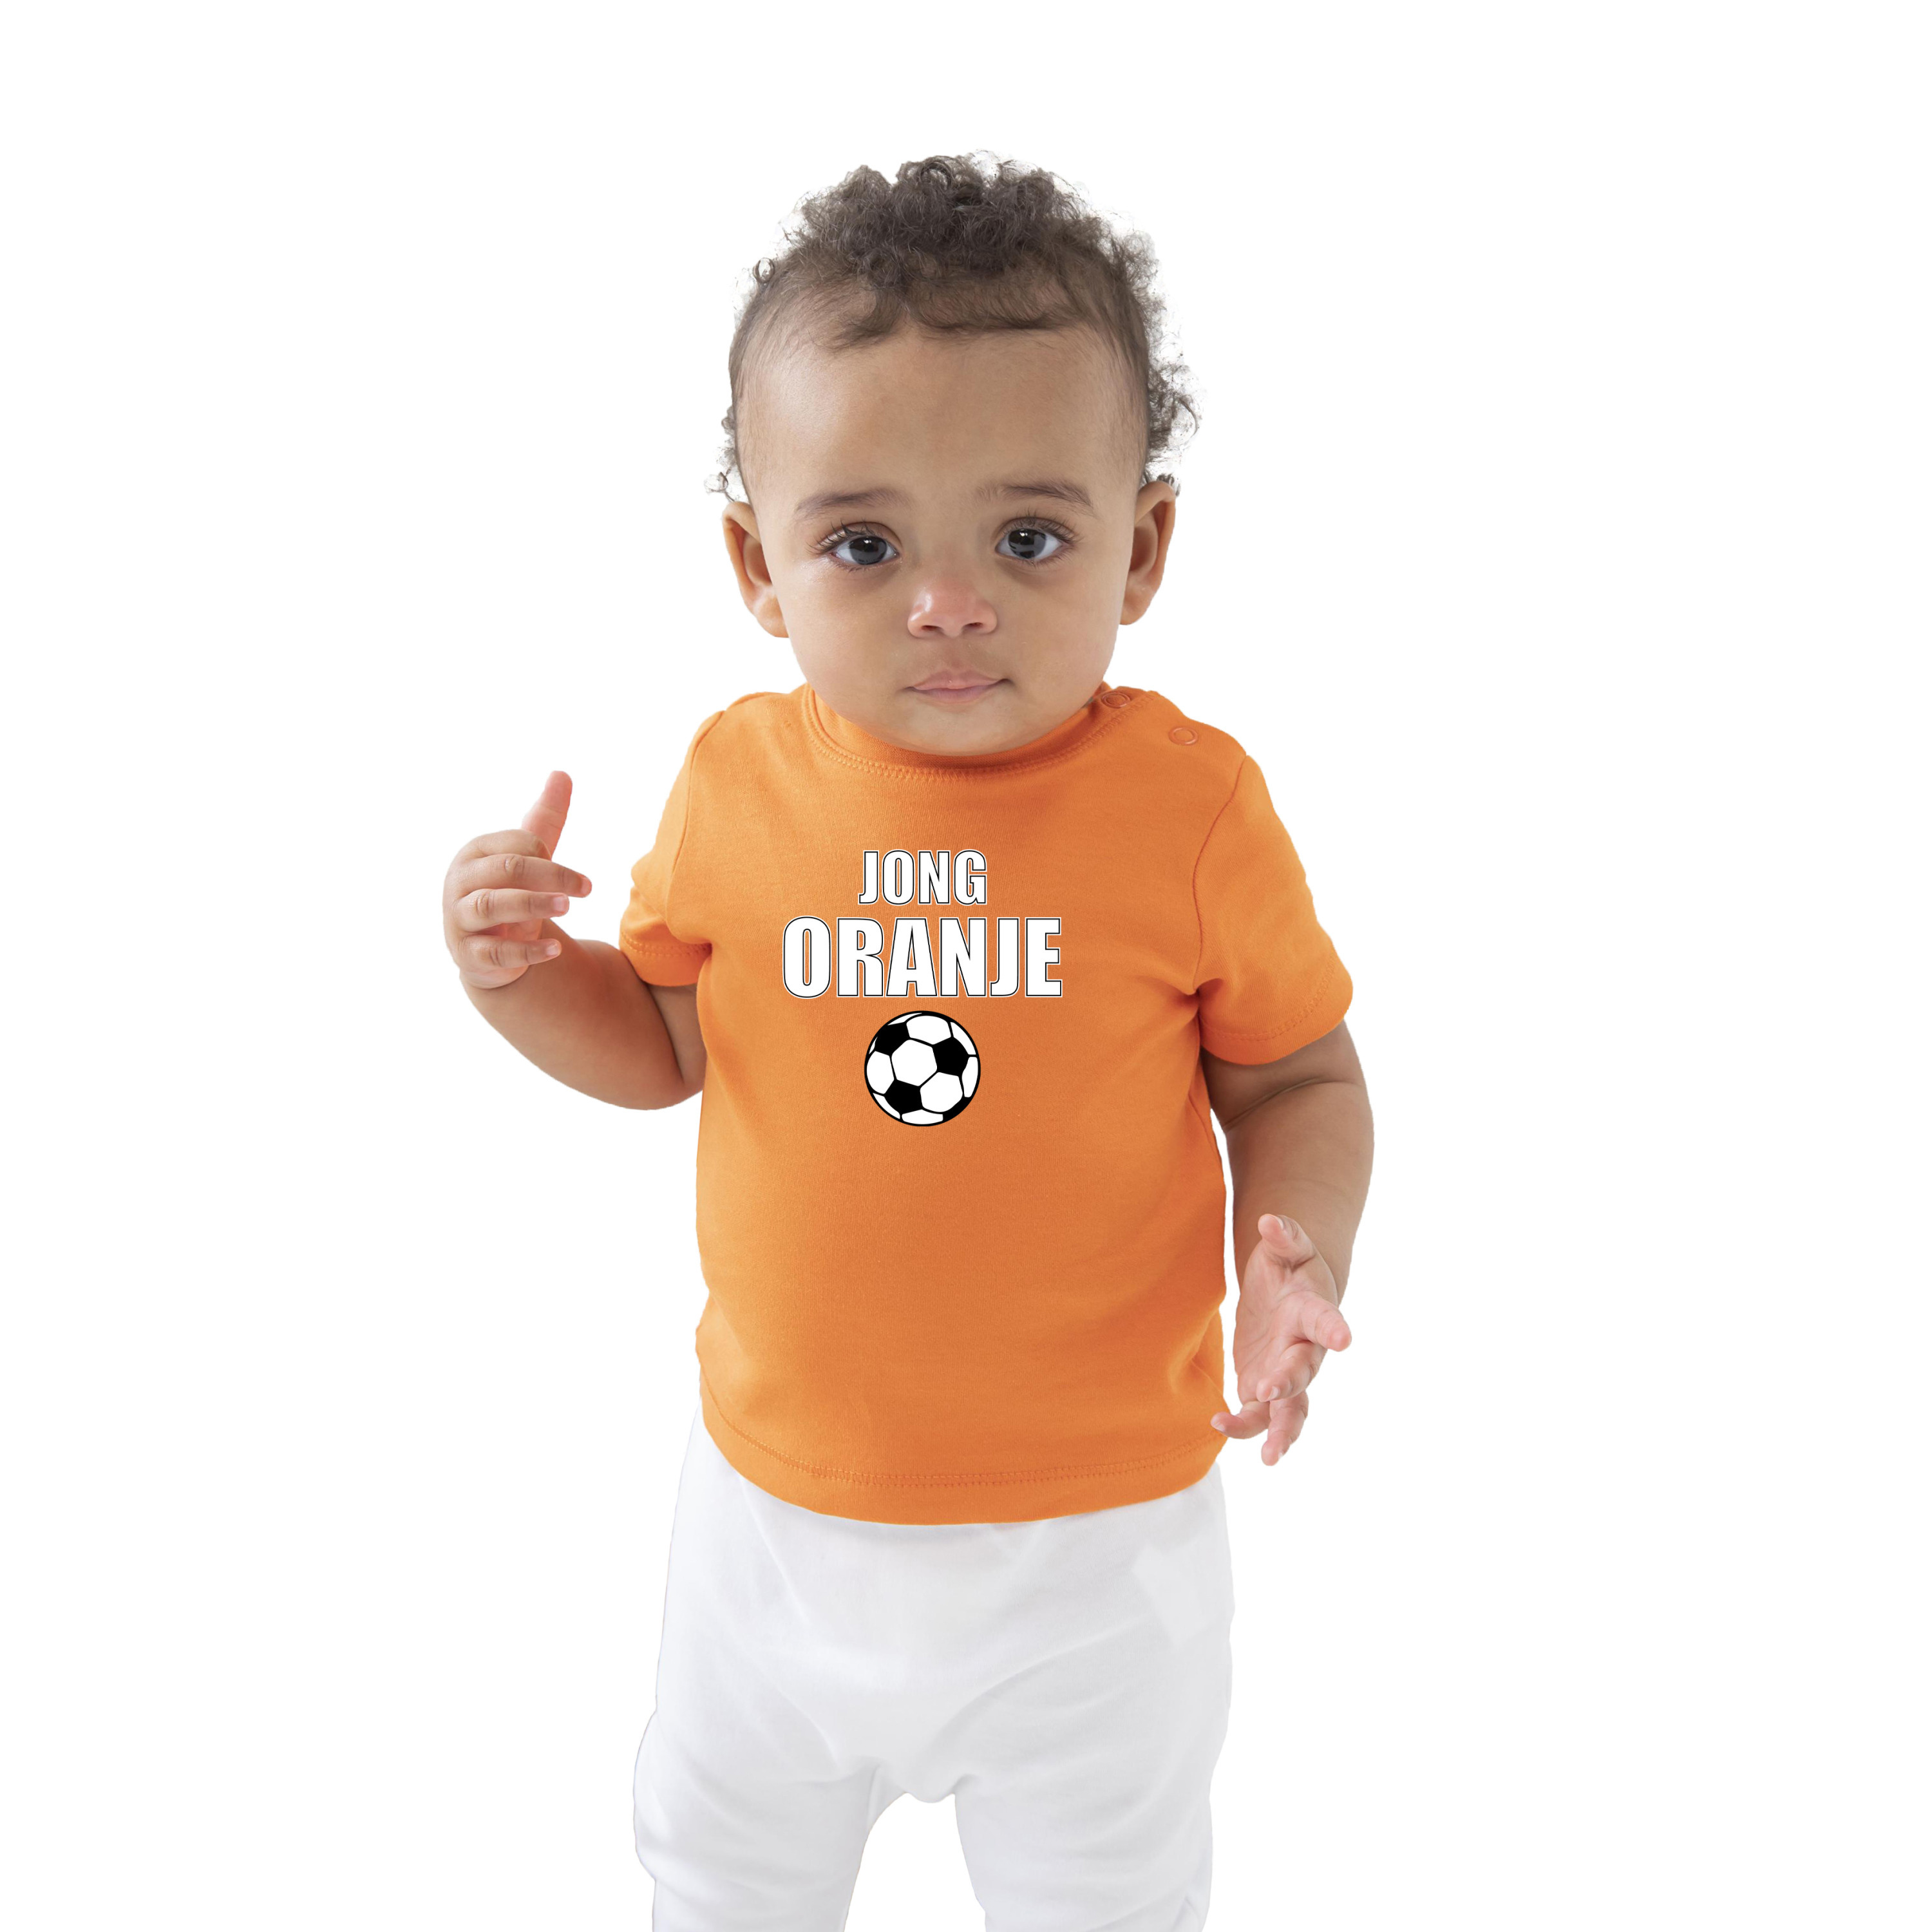 Oranje t-shirt jong oranje Holland-Nederland supporter voor baby-peuter